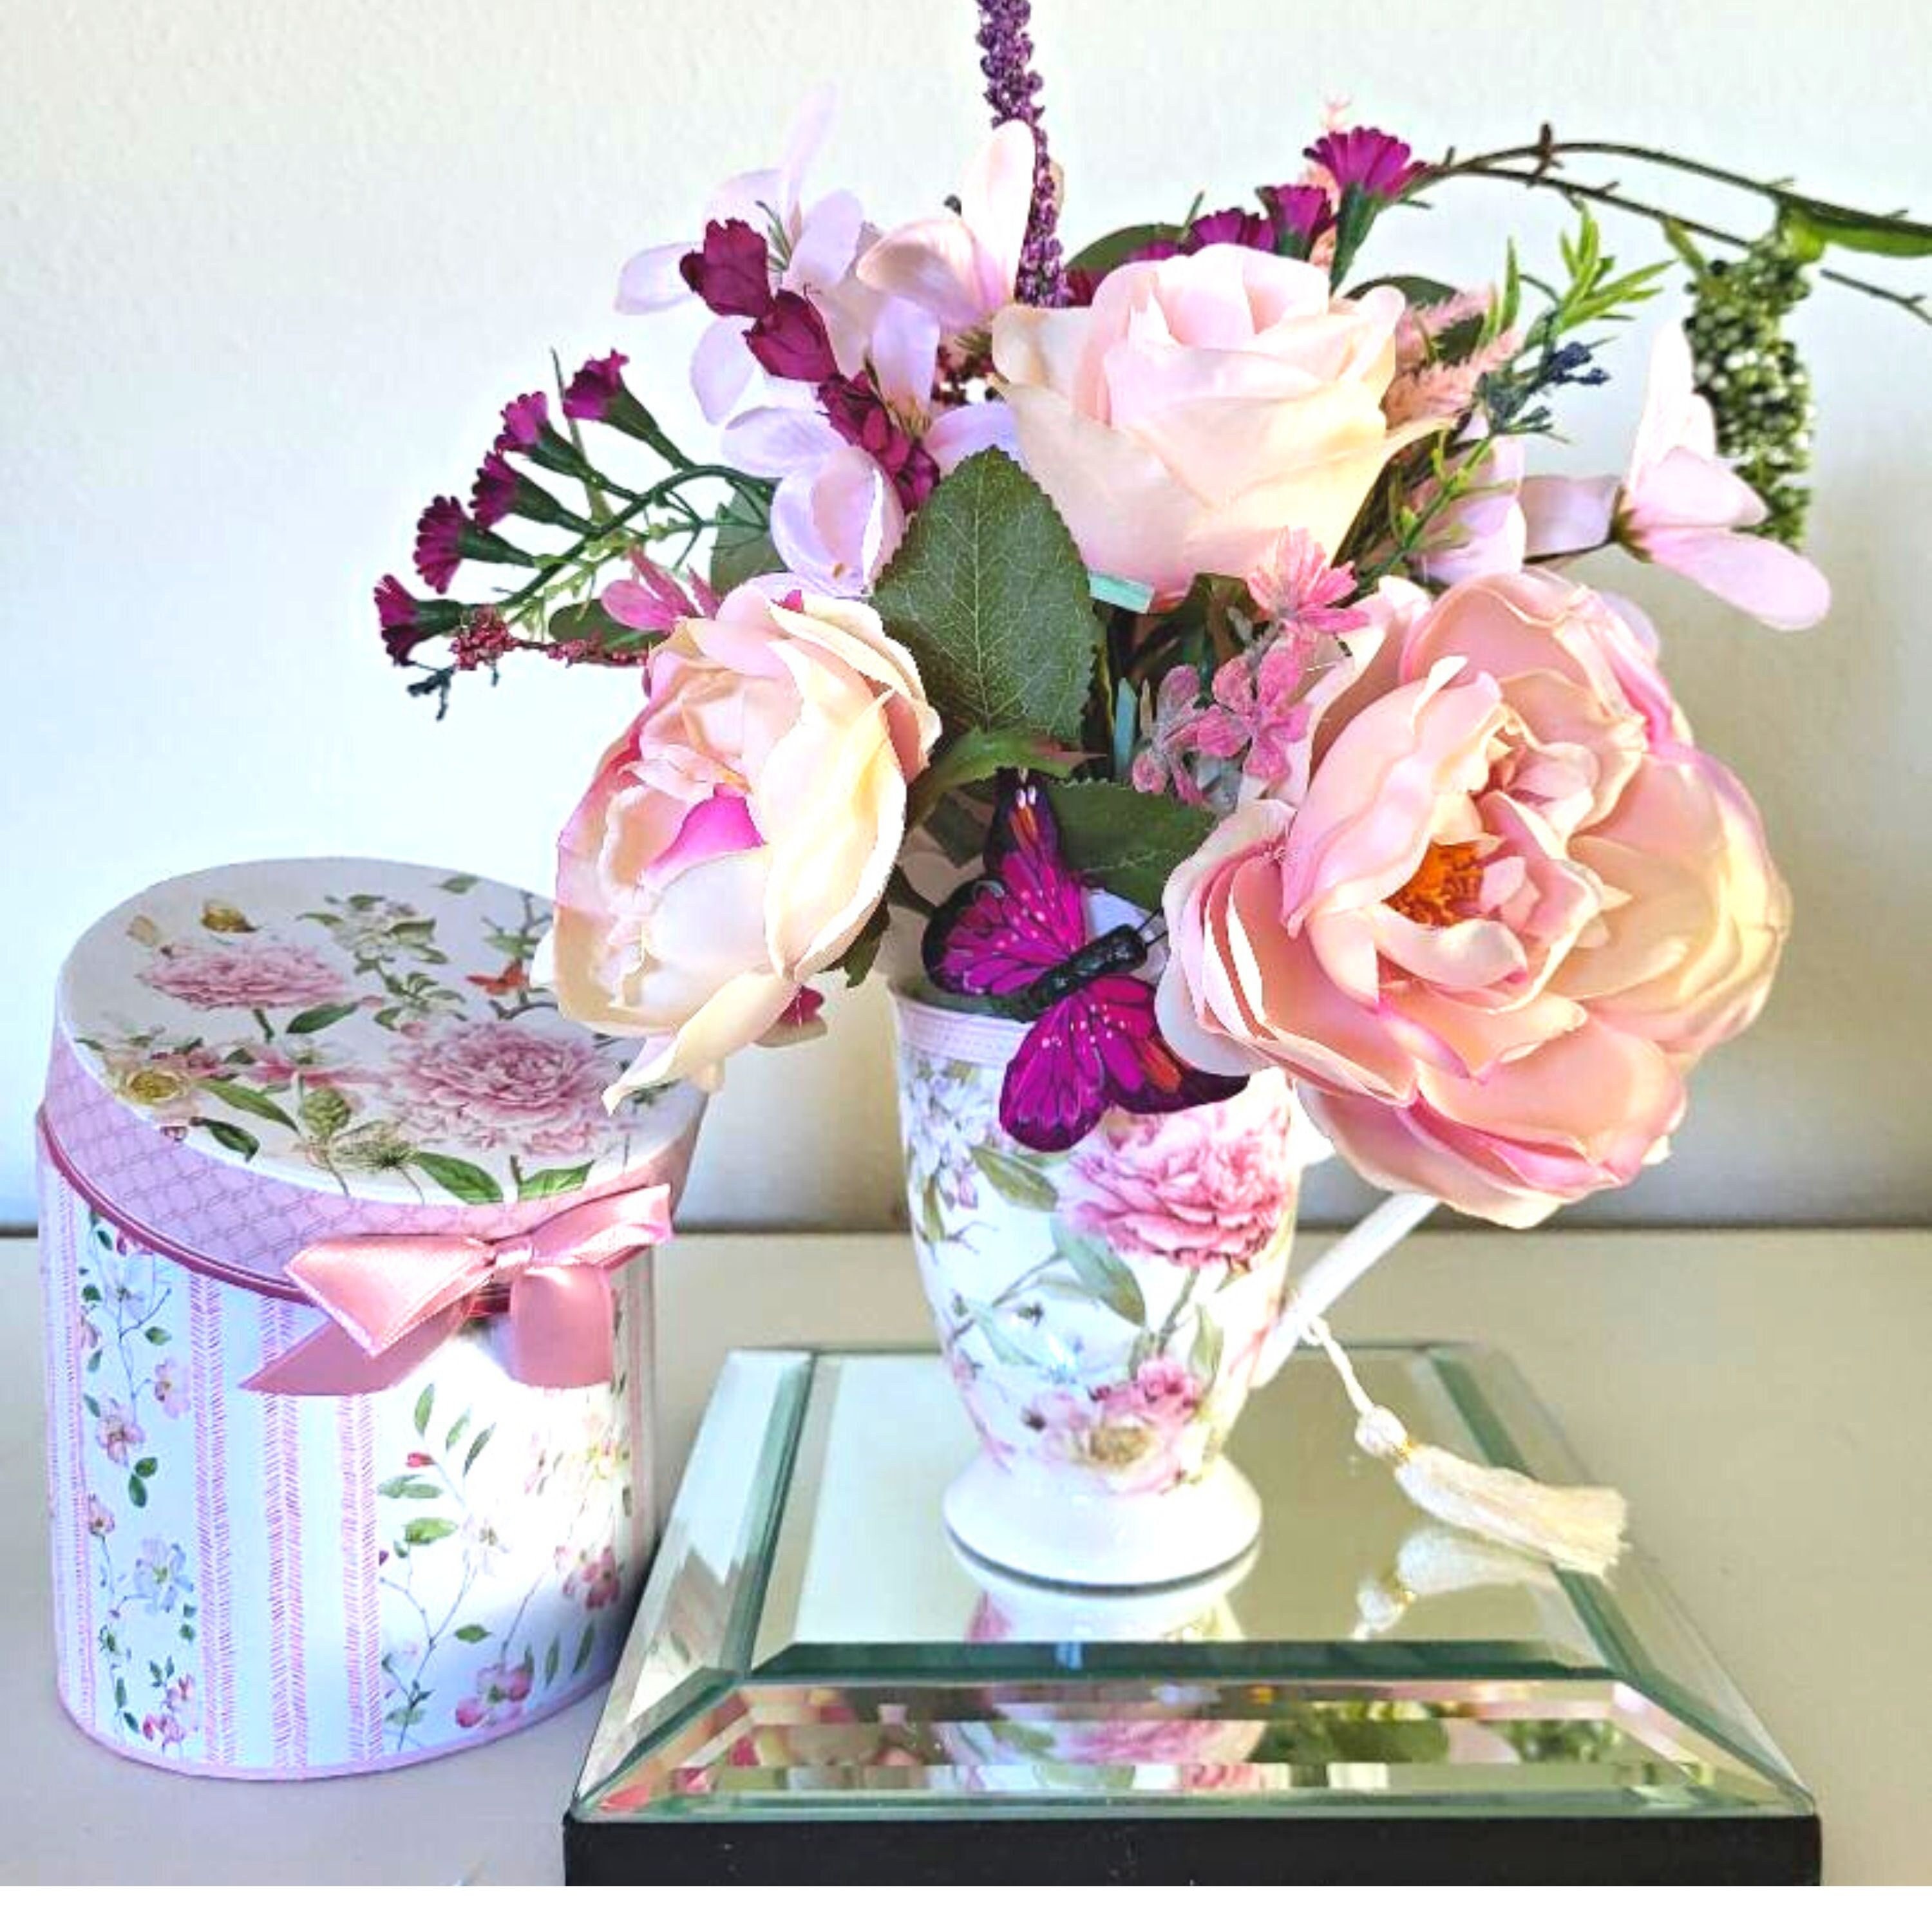 Respect De schuld geven Toegepast Hospital gift for her. Pink roses in a porcelain mug. Cup of - Etsy België